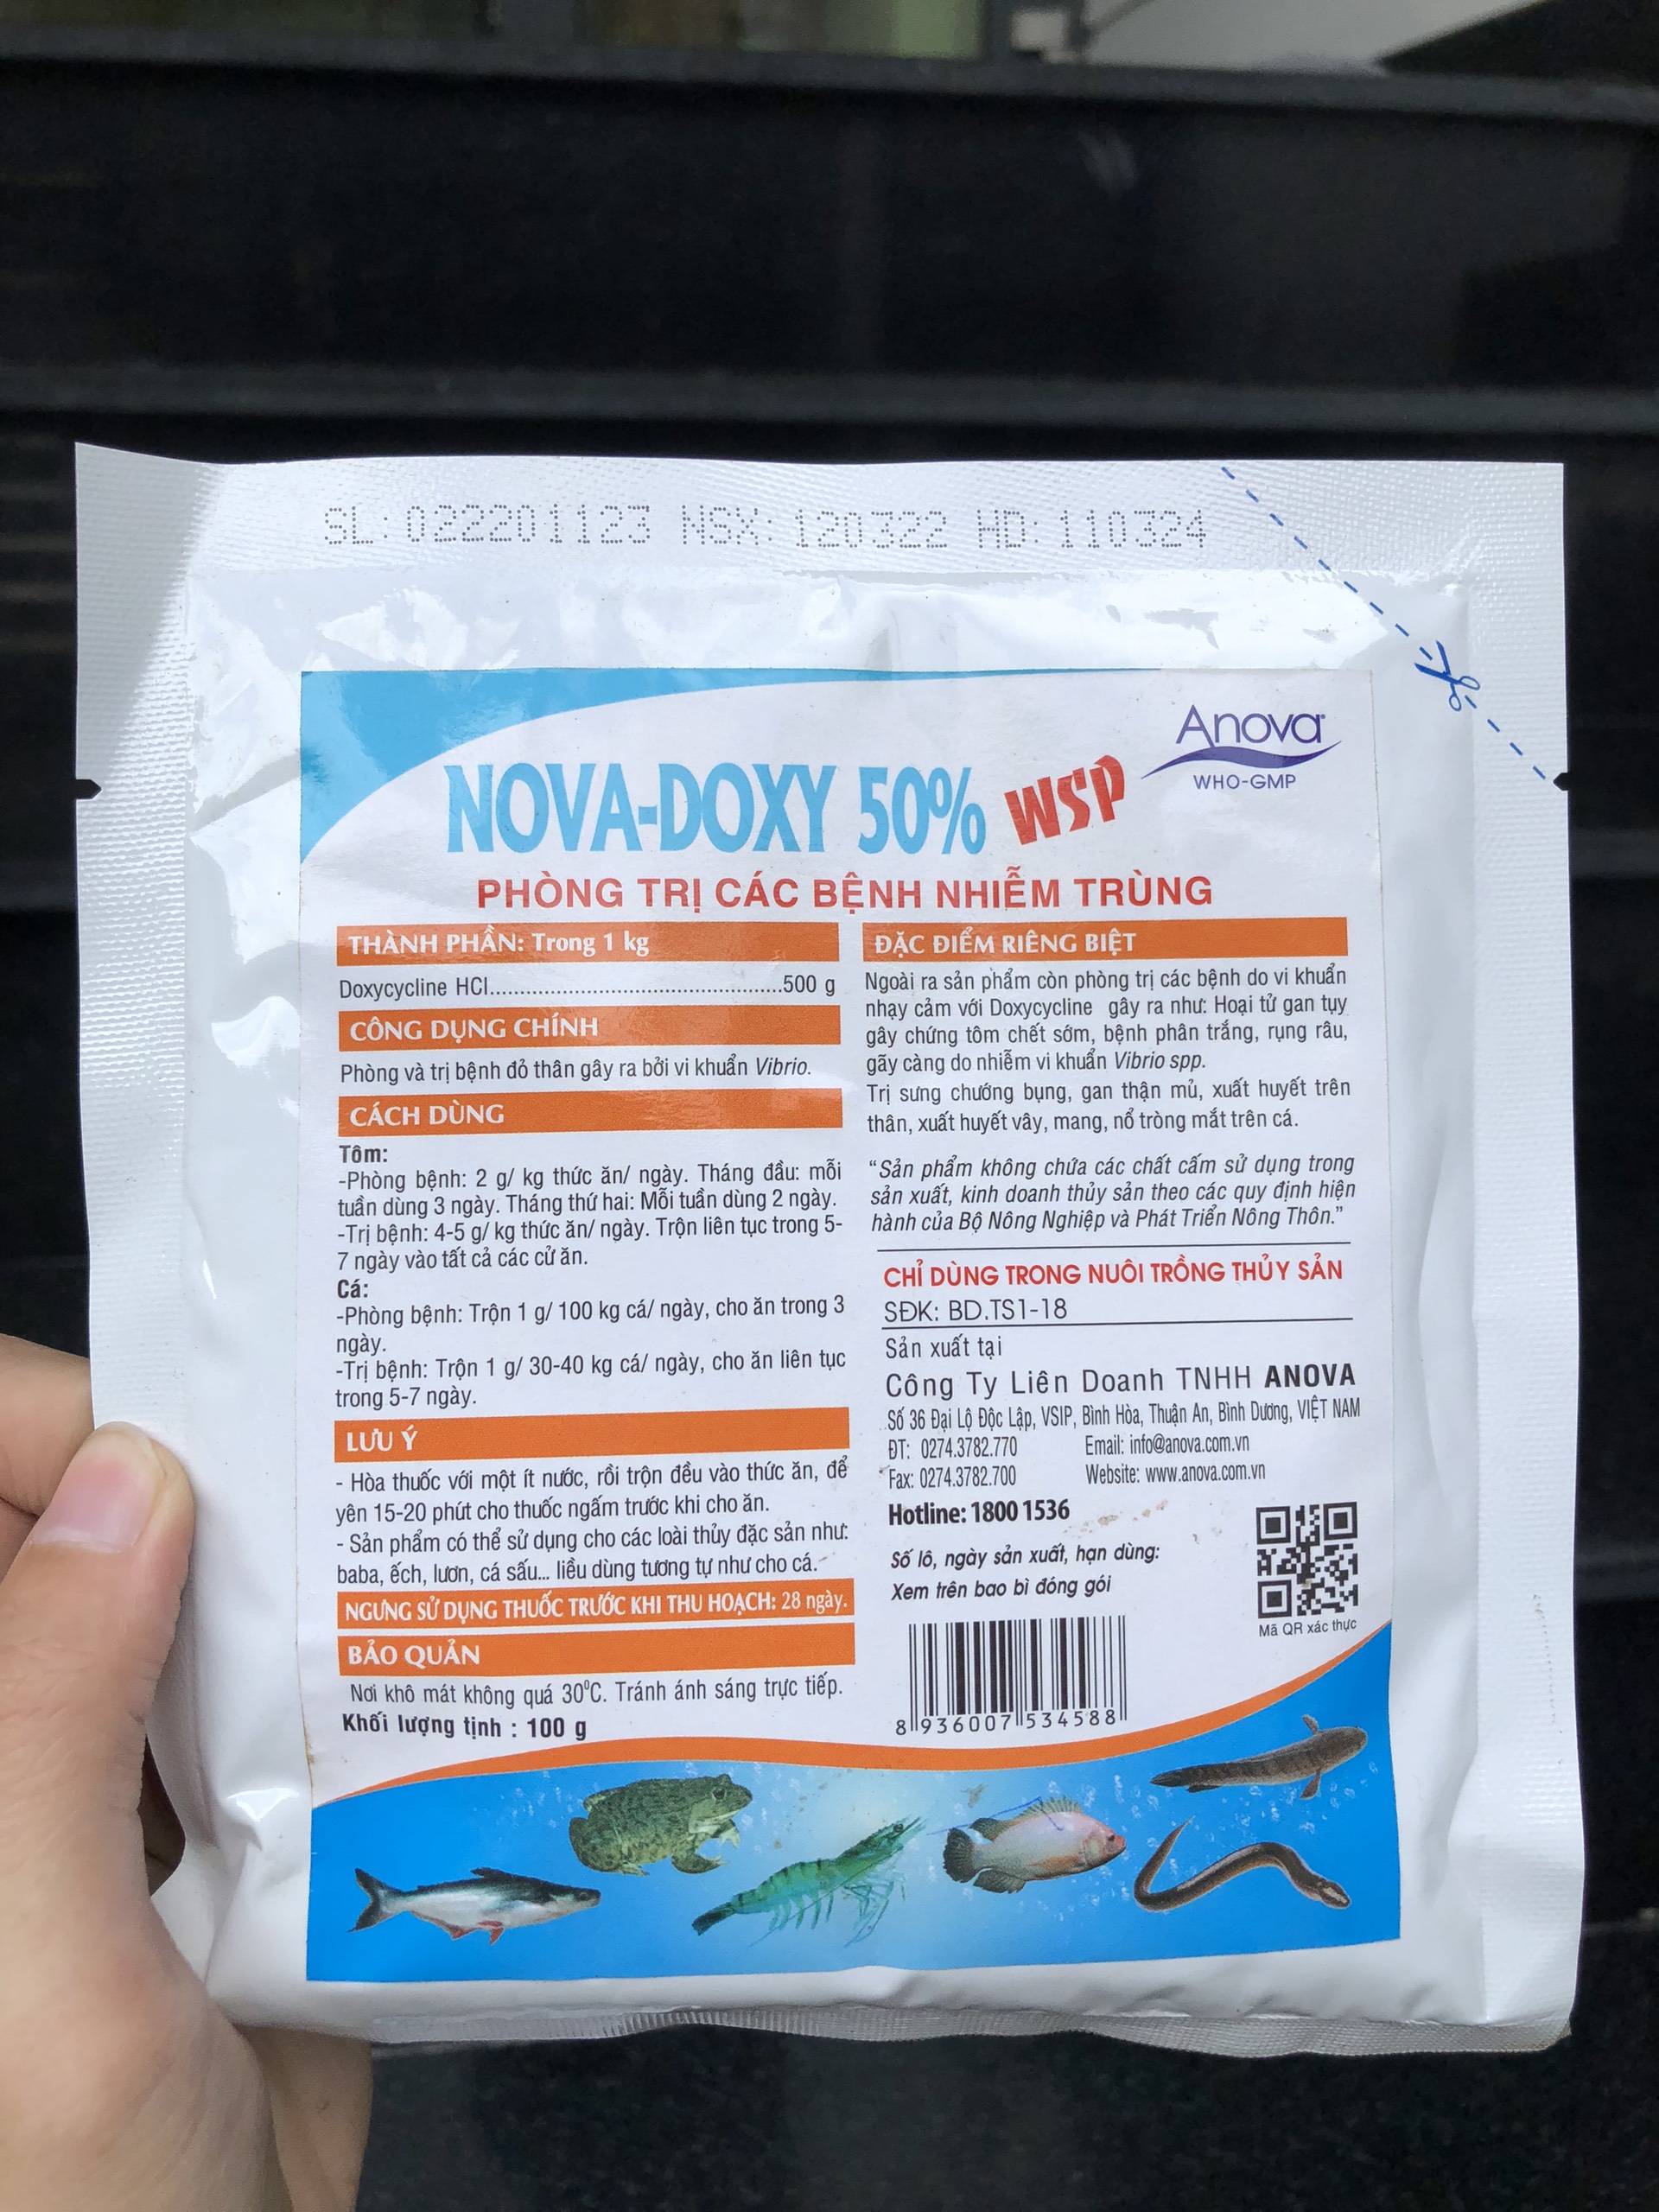 Nova Doxy 50% WSP trị xuất huyết vây, mang, chướng bụng, gan thận mủ, nổ tròng mắt trên cá, bệnh phân trắng trên tôm (Gói 100g)